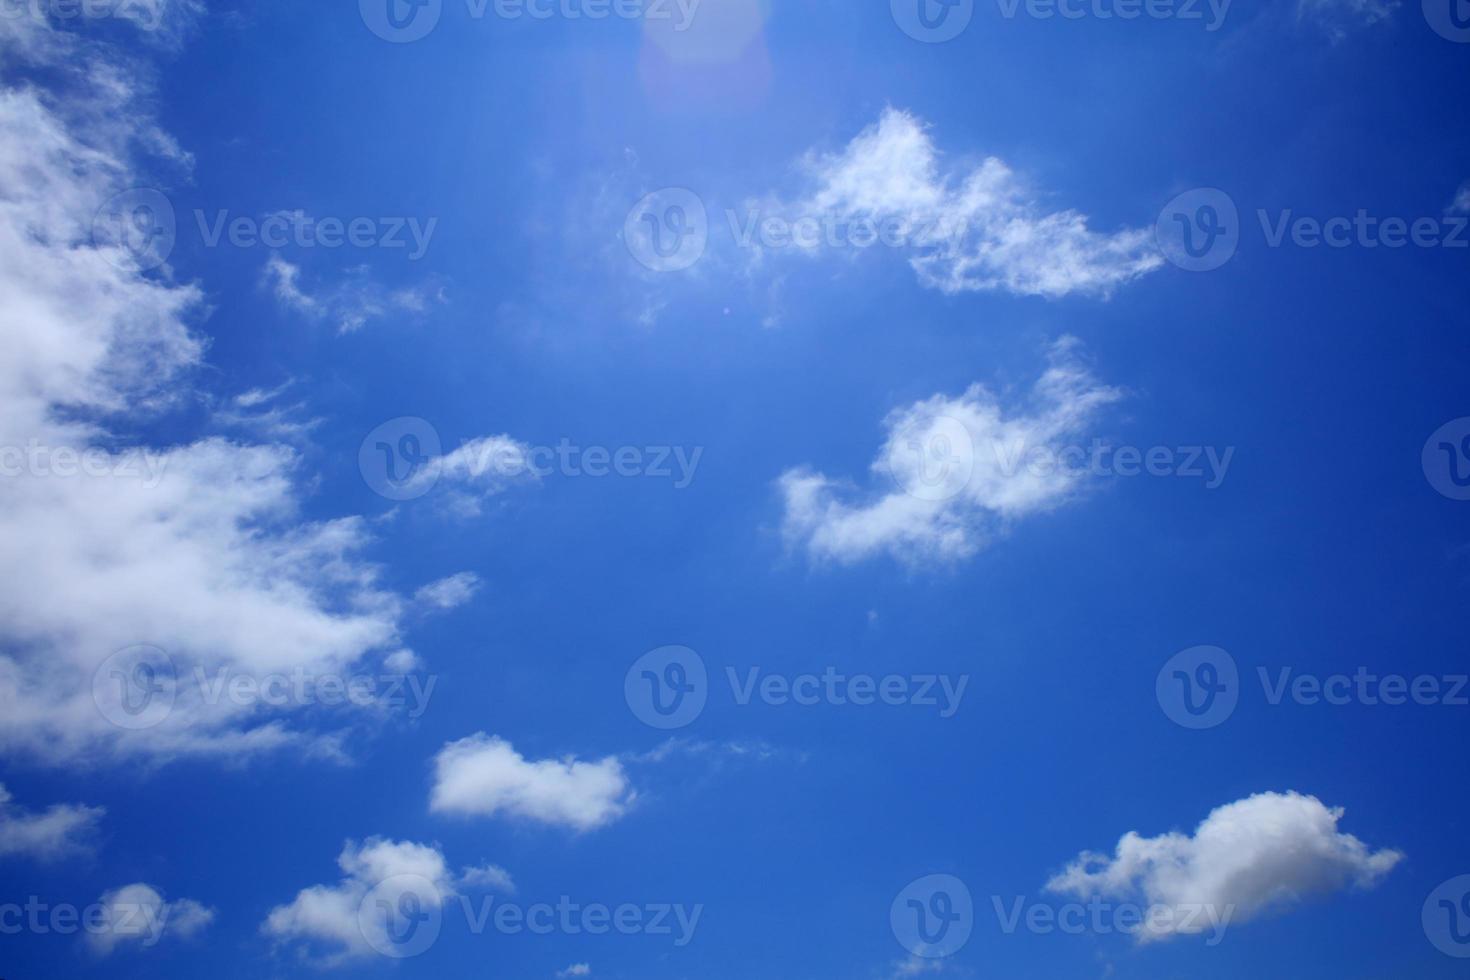 ciel d'été avec fond de nuages estampes modernes de haute qualité photo